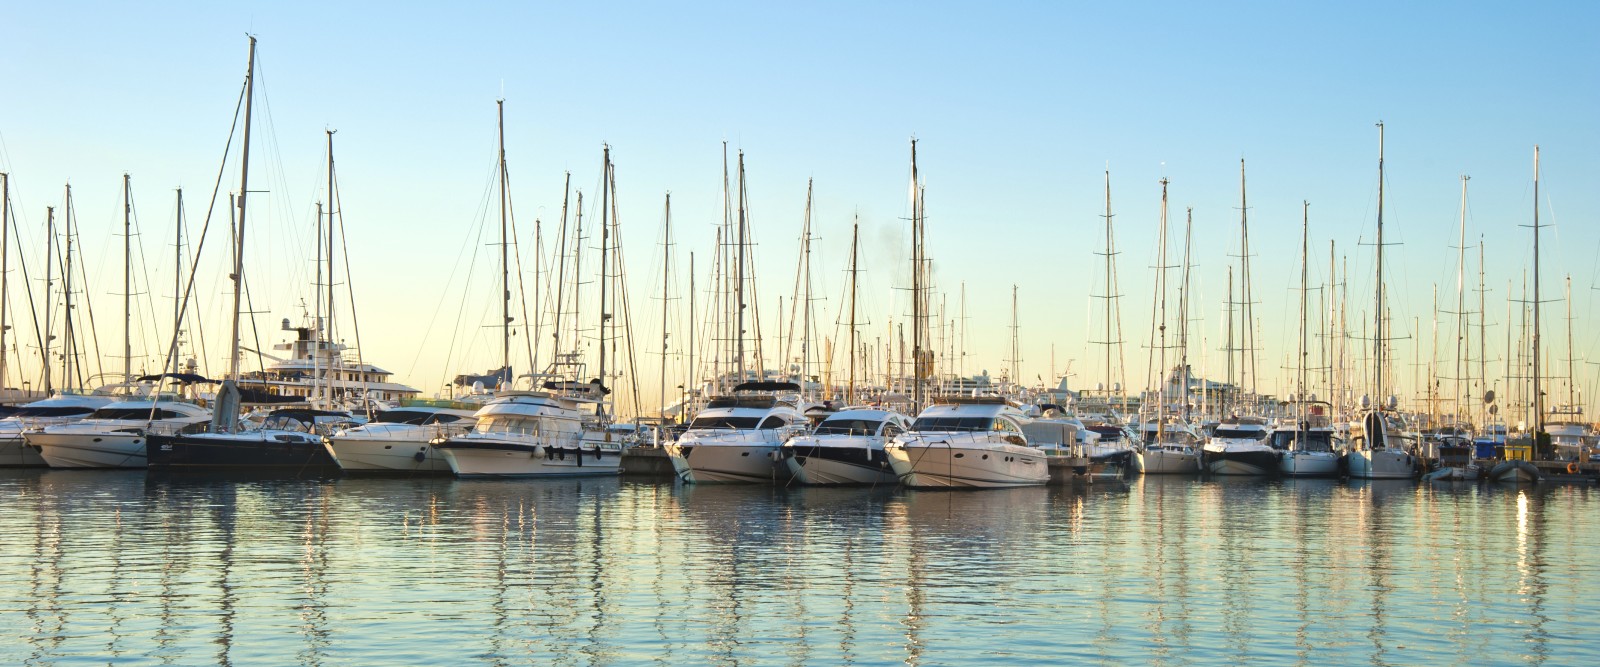 yachts at marina of Majorca